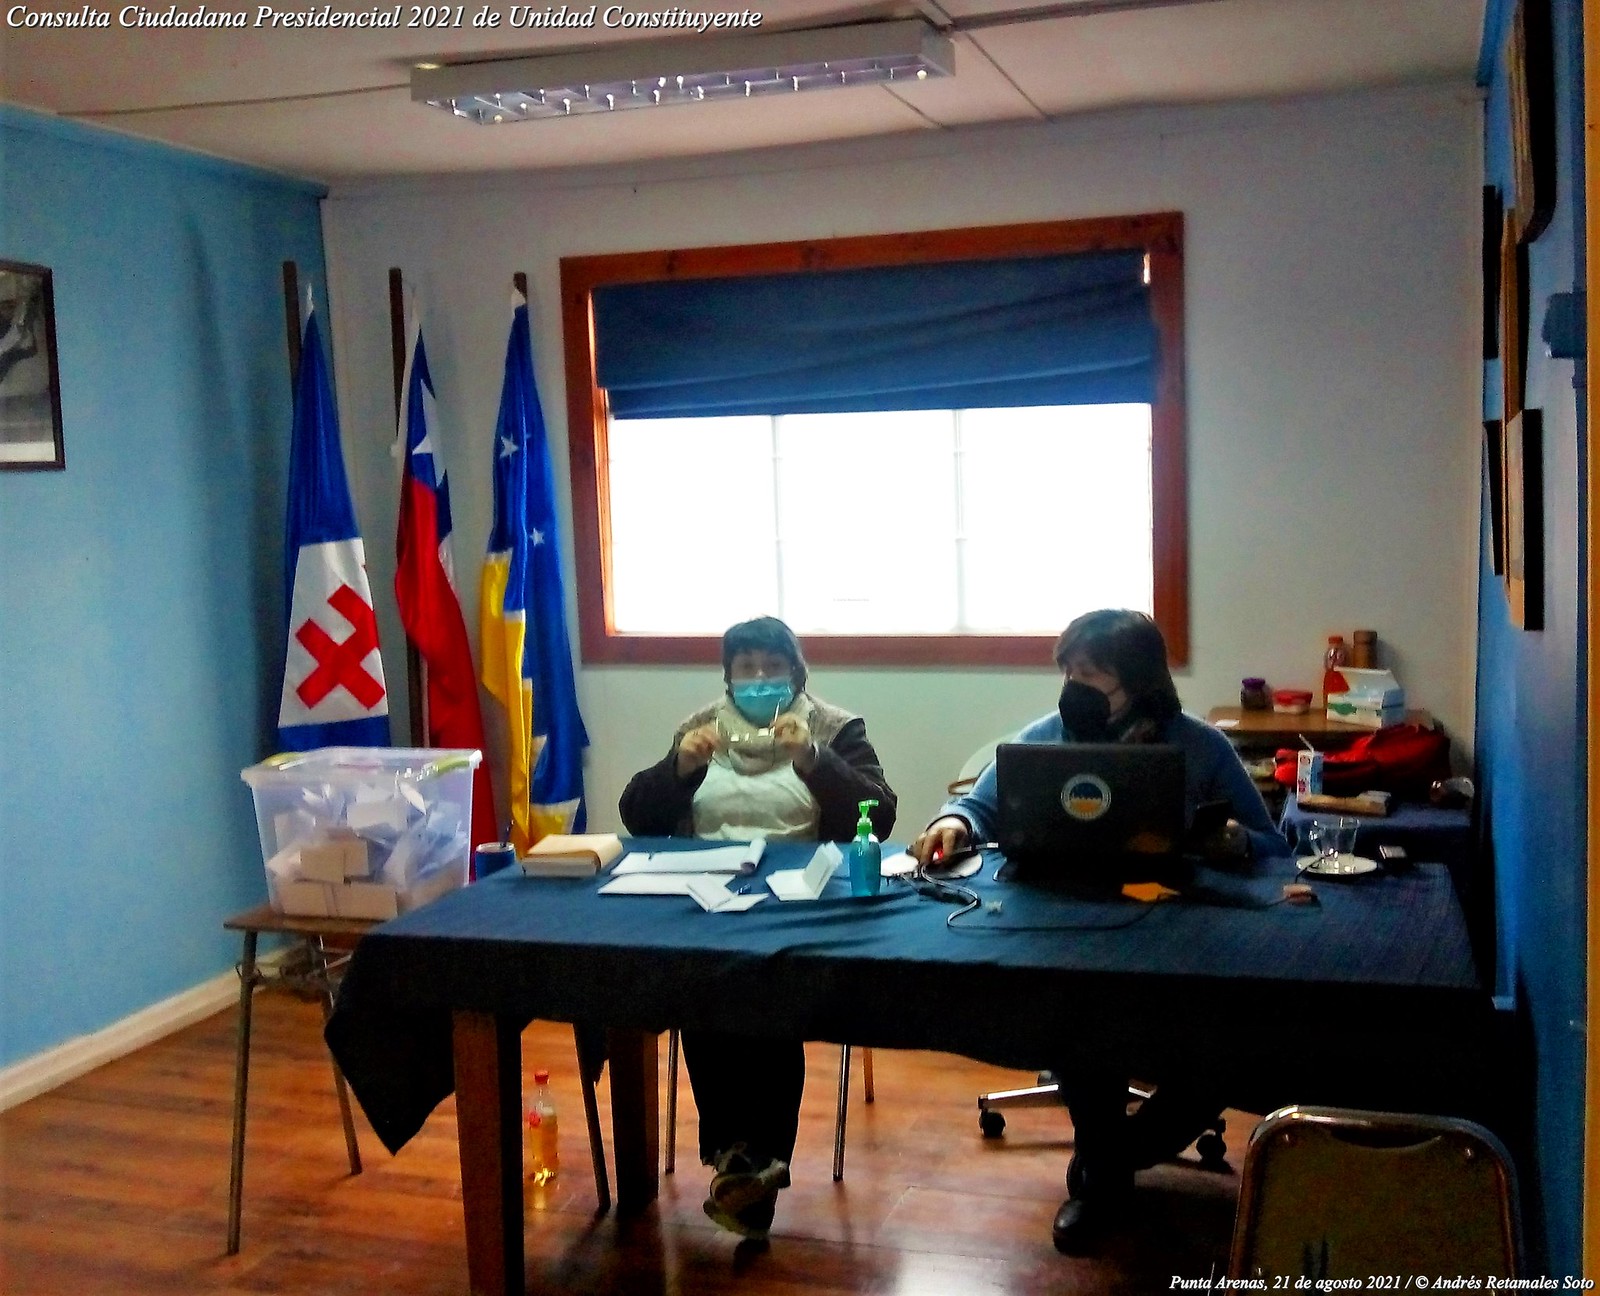 Consulta Ciudadana Presidencial 2021 de Unidad Constituyente, Punta Arenas, 21 de agosto 2021